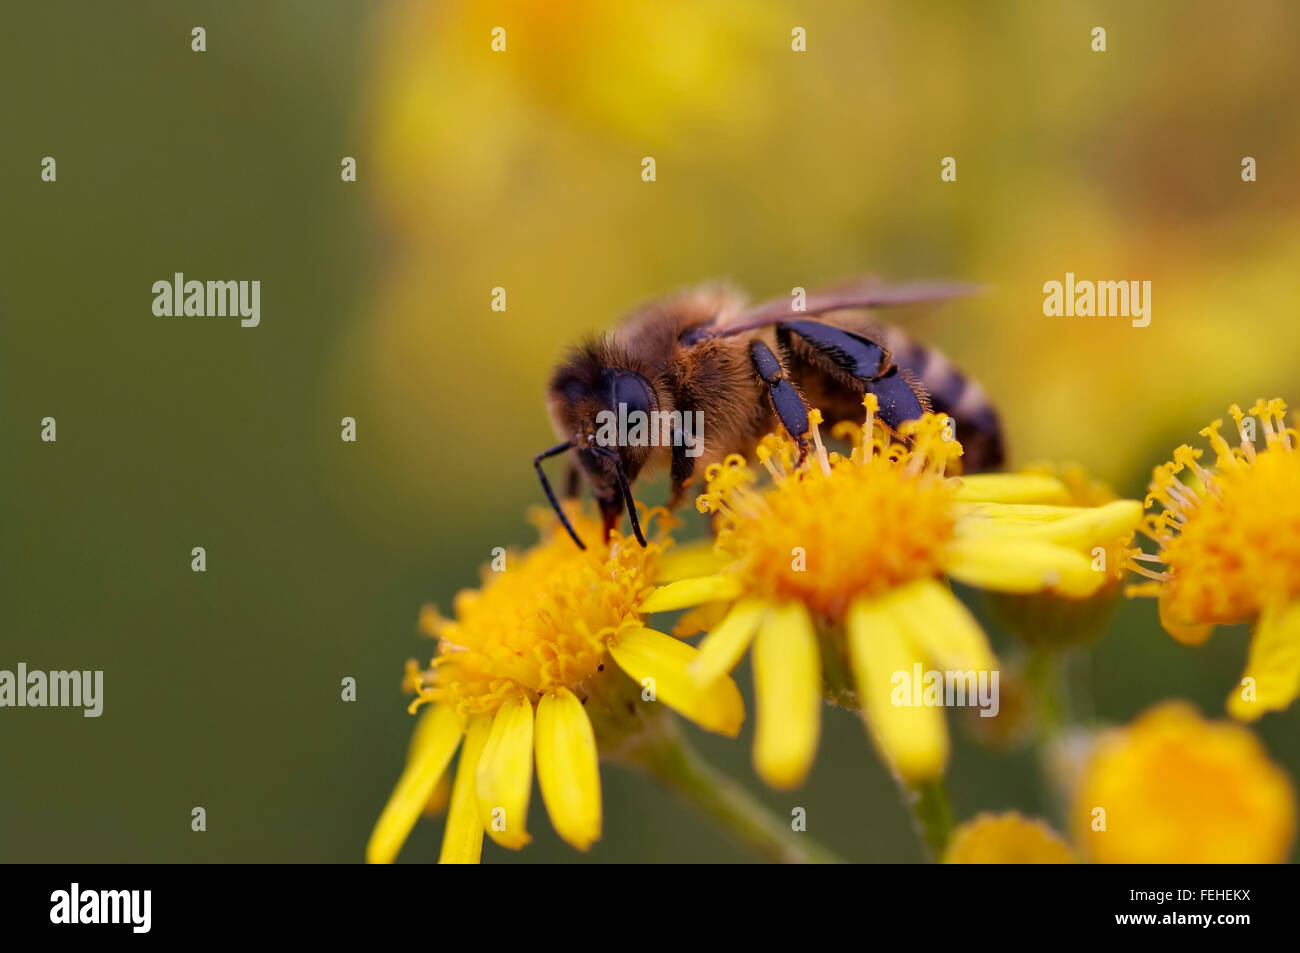 Honeybee sul fiore - impollinazione Foto Stock